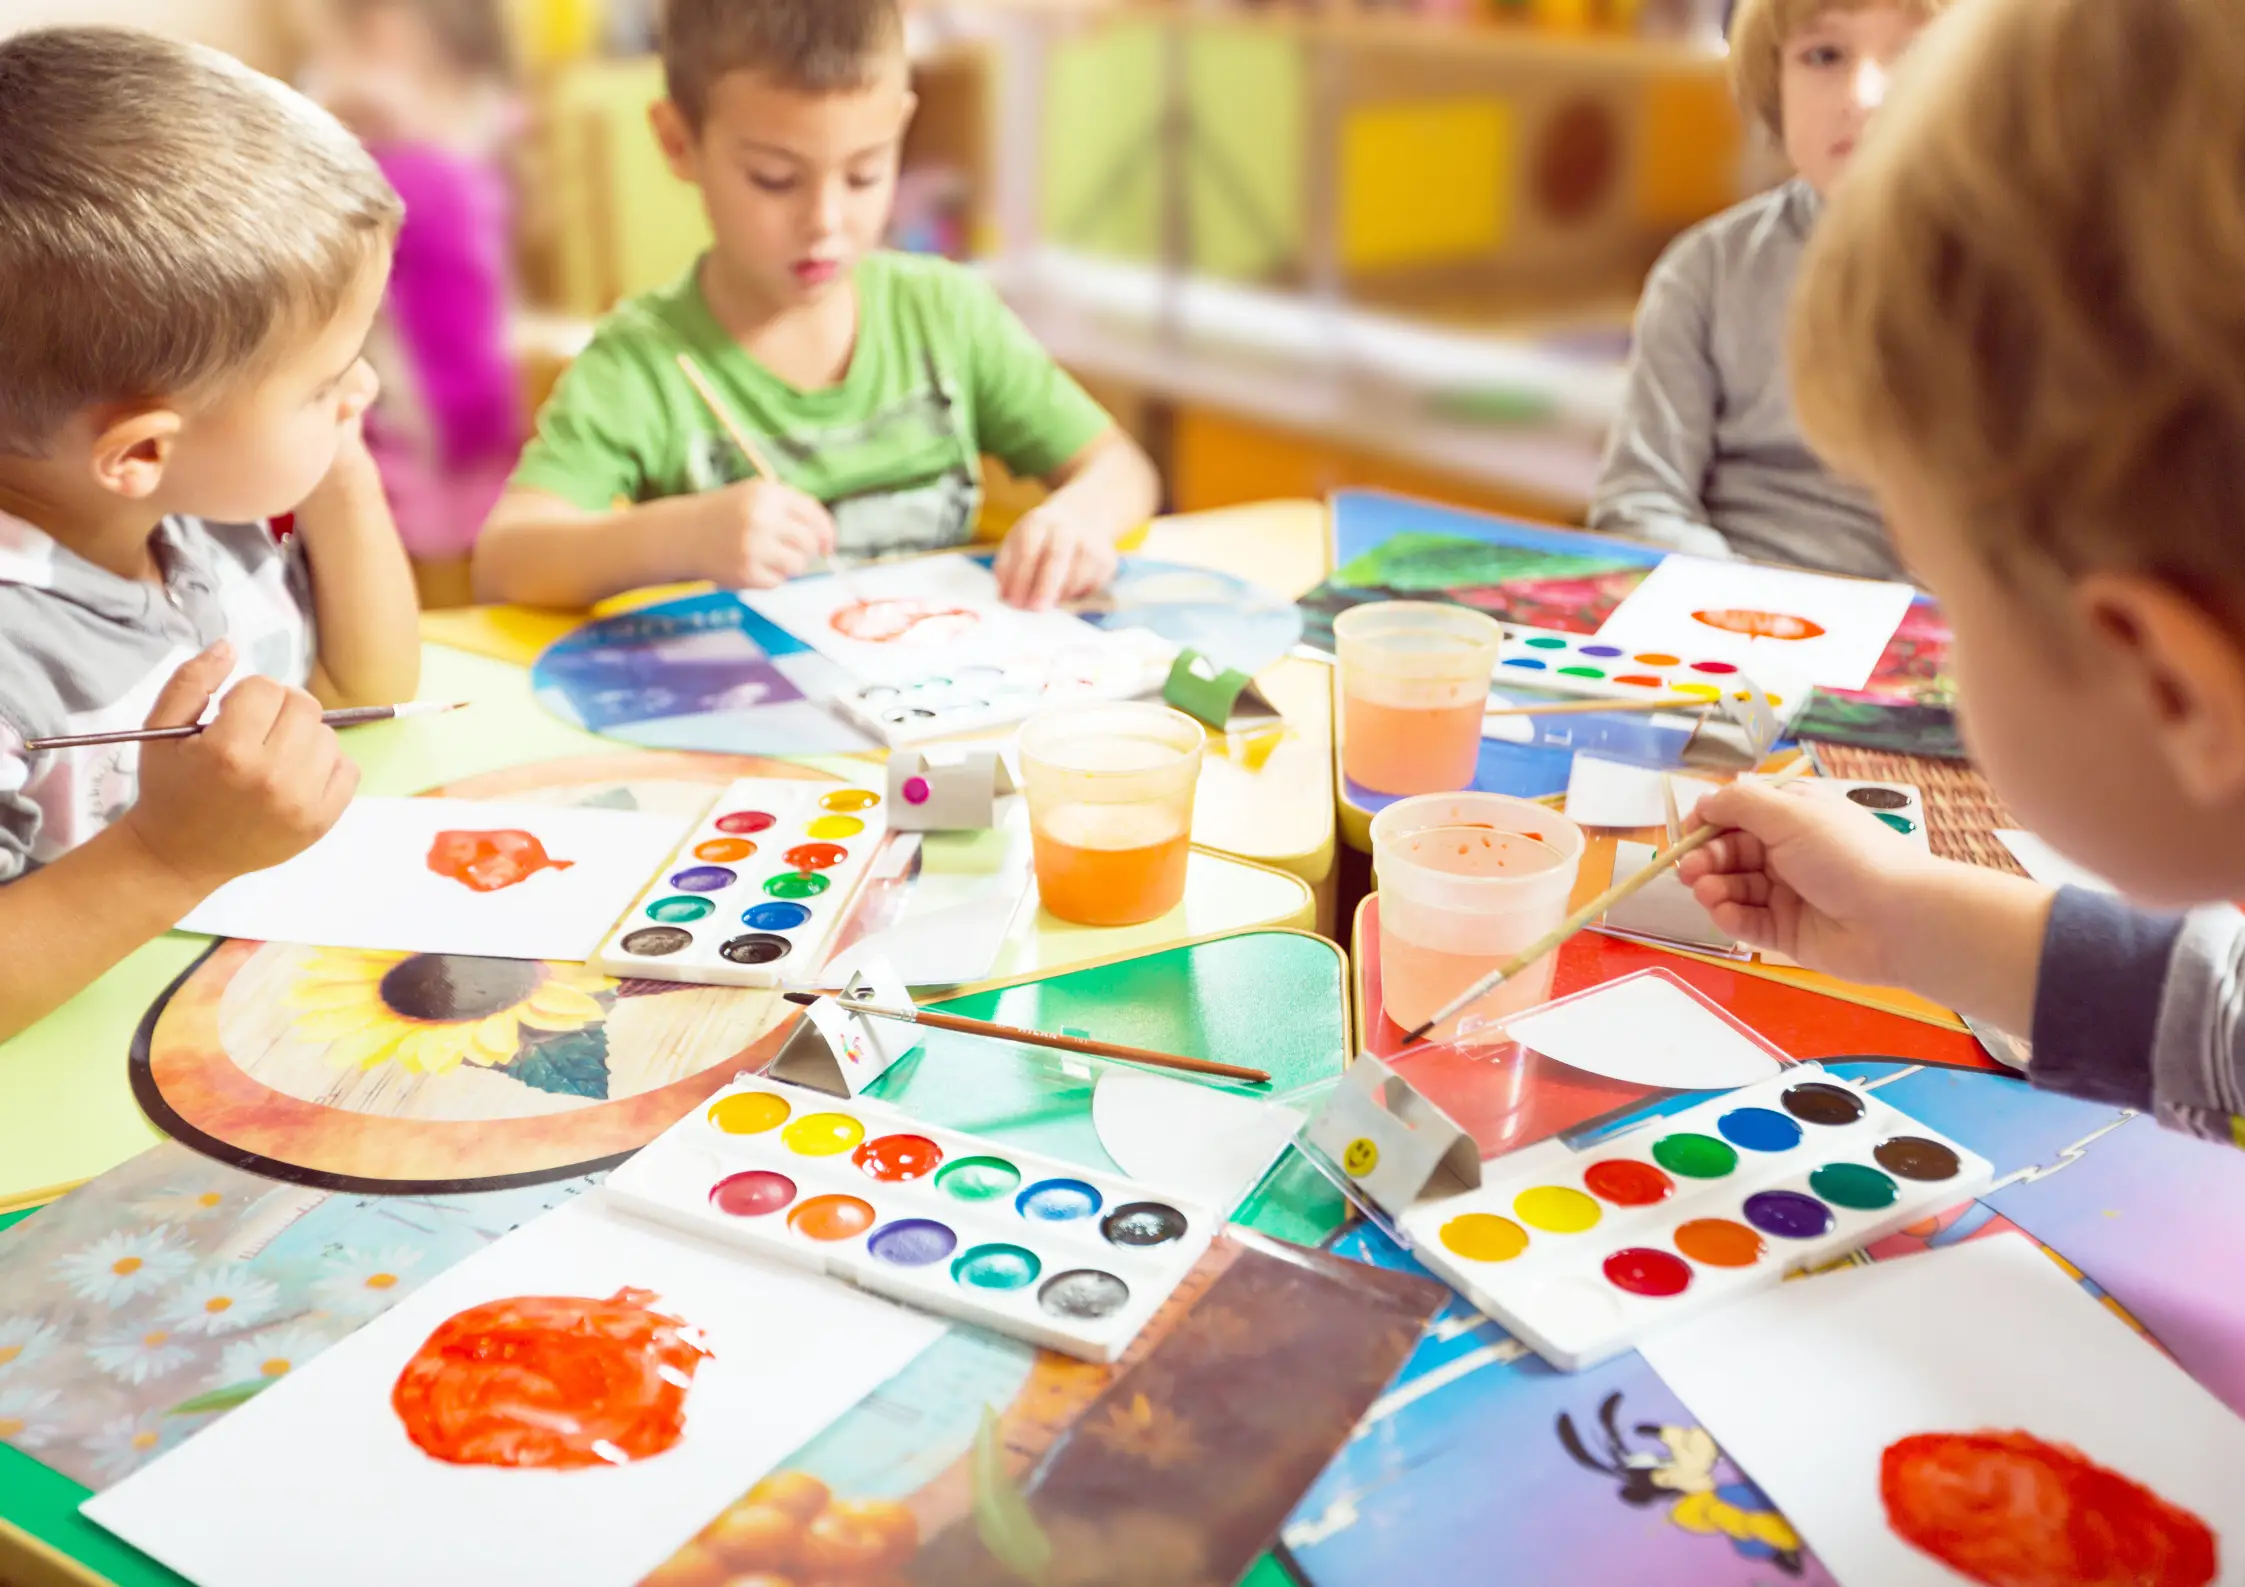 12 Juegos de pintar para niños que estimularán su creatividad